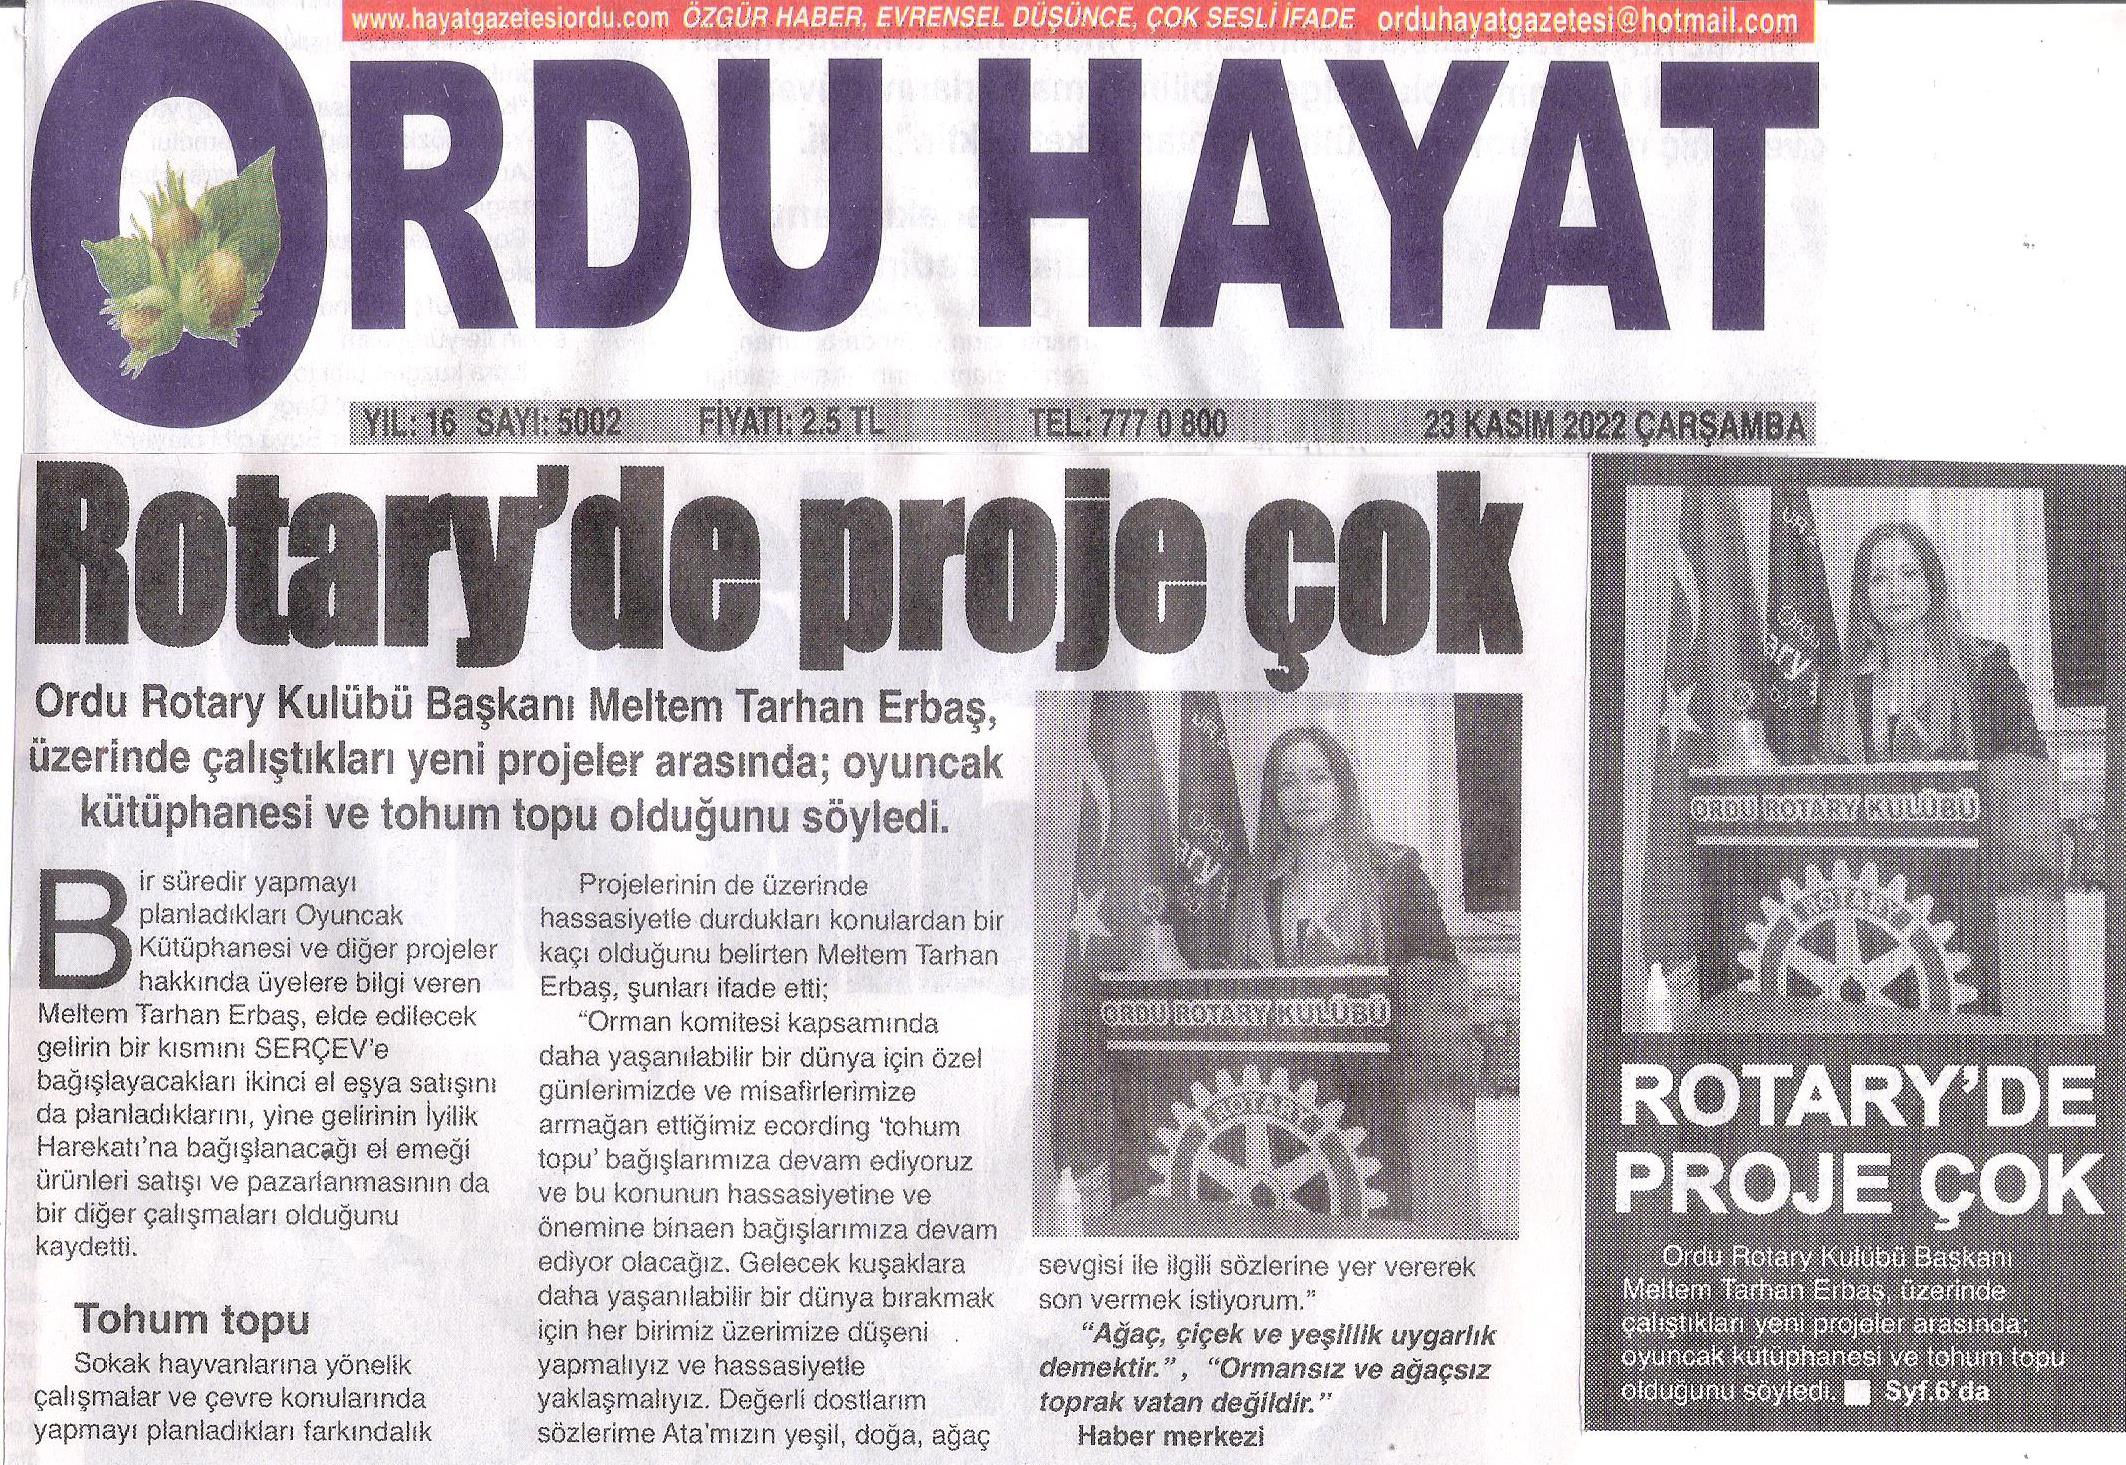 Ordu Rotary Kulübü Başkanı Rtn. Meltem Erbaş’ın bu haftaki mesajı “ Rotary’de Proje Çok “ ve “Proje Üretmeye Devam” başlığı  ile basında yer aldı.